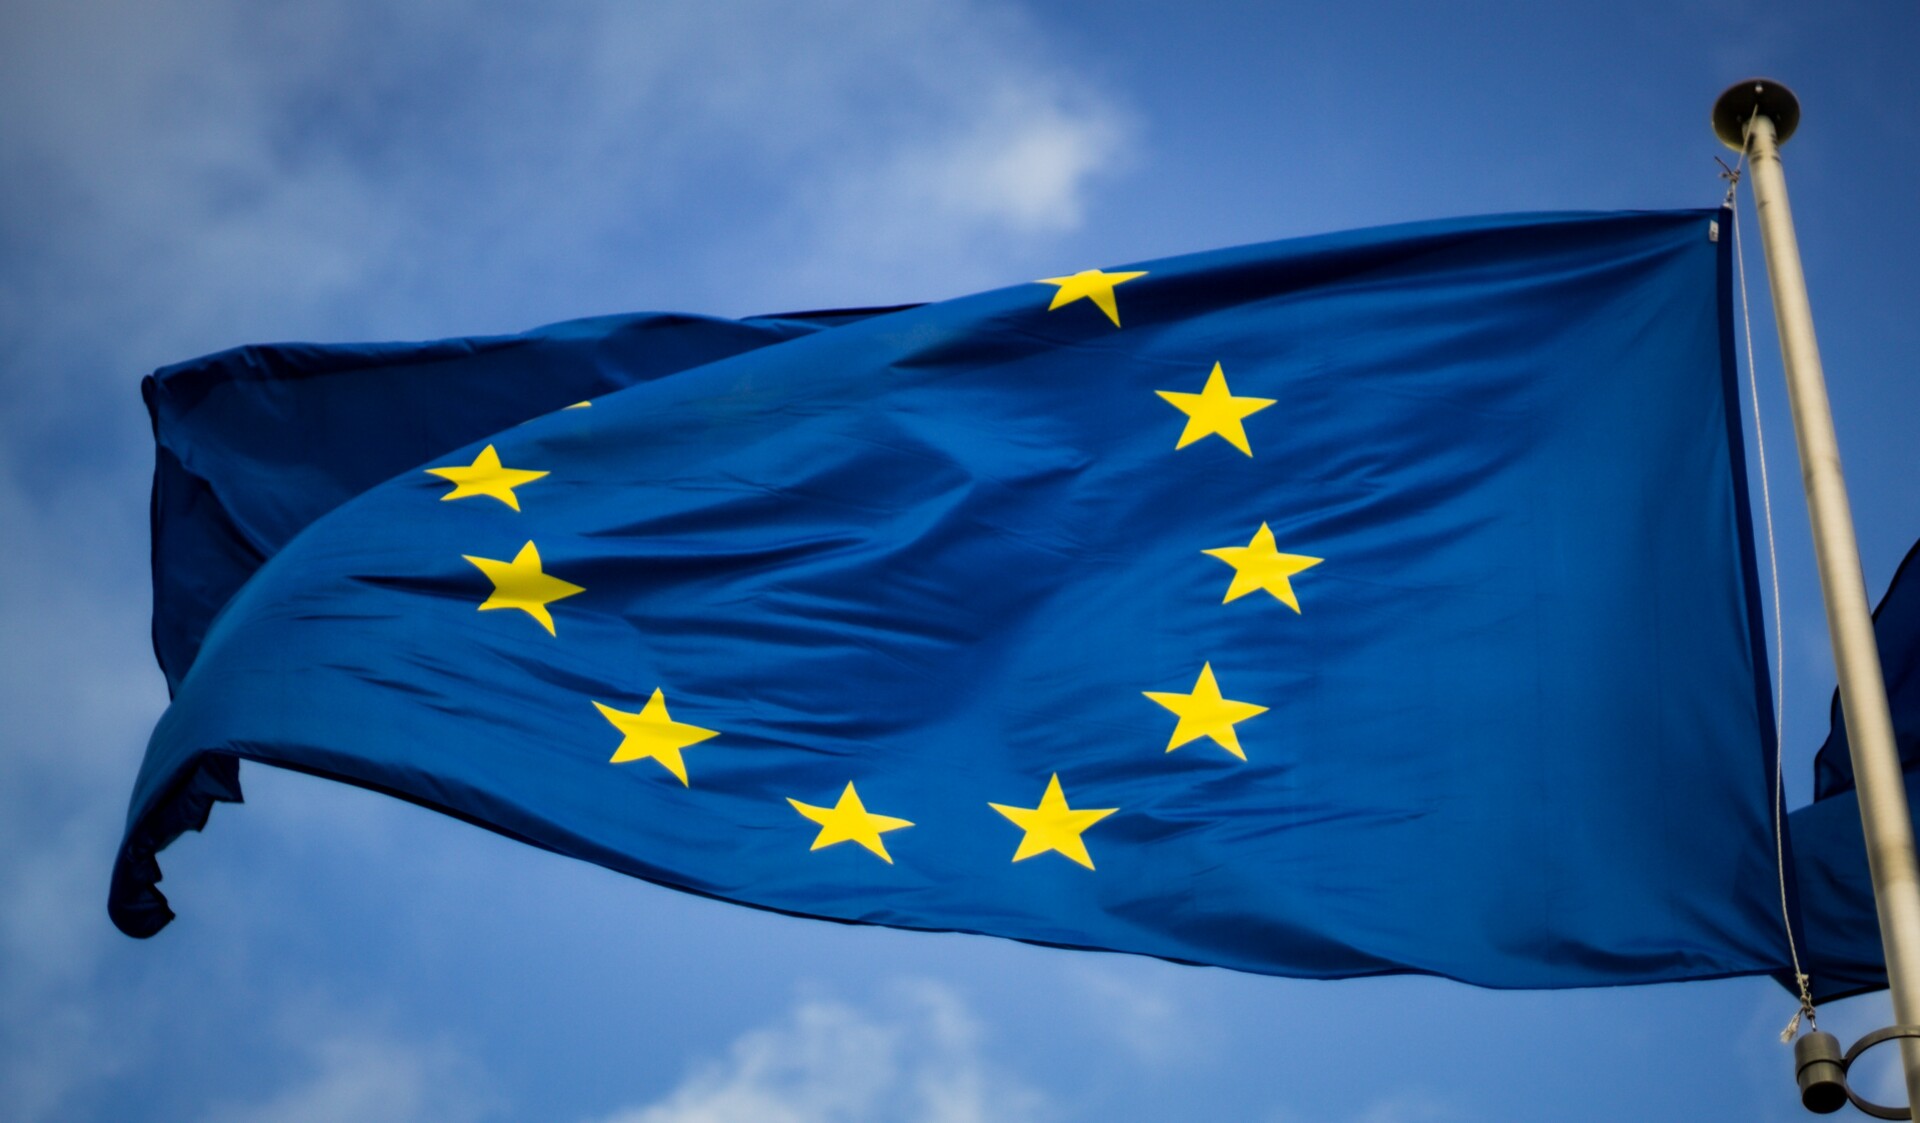 Η σημαία της Ευρωπαϊκής Ένωσης © Unsplash